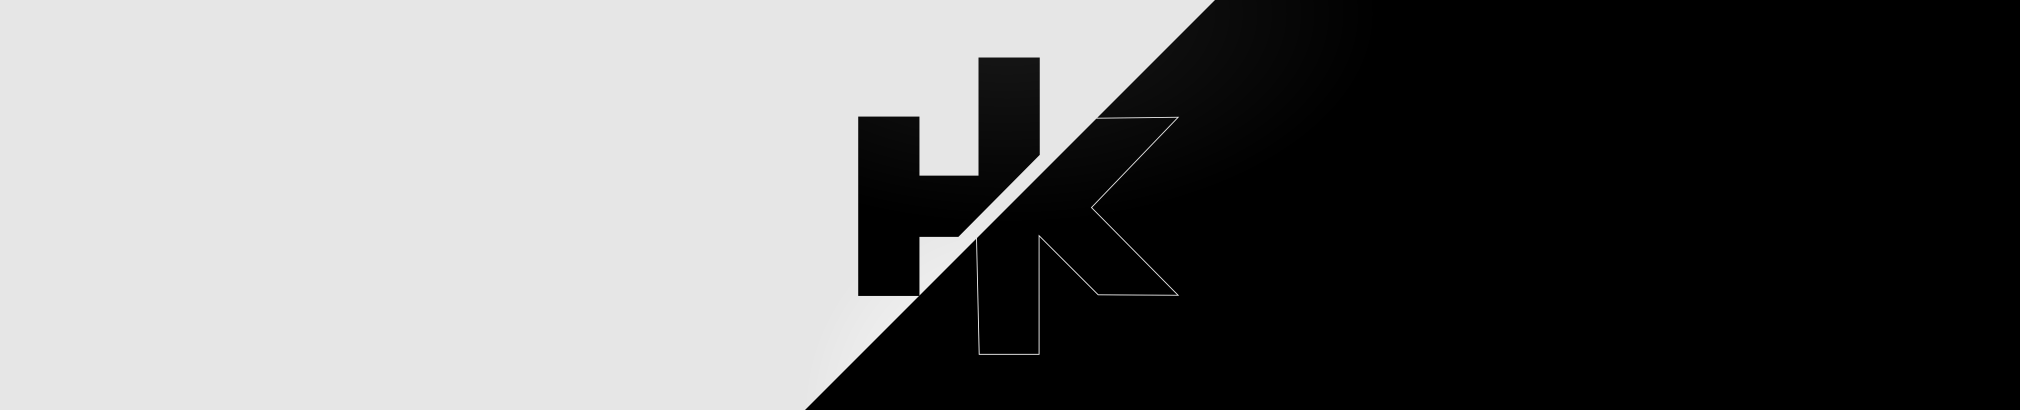 HK Keystone Herbett のプロファイルバナー